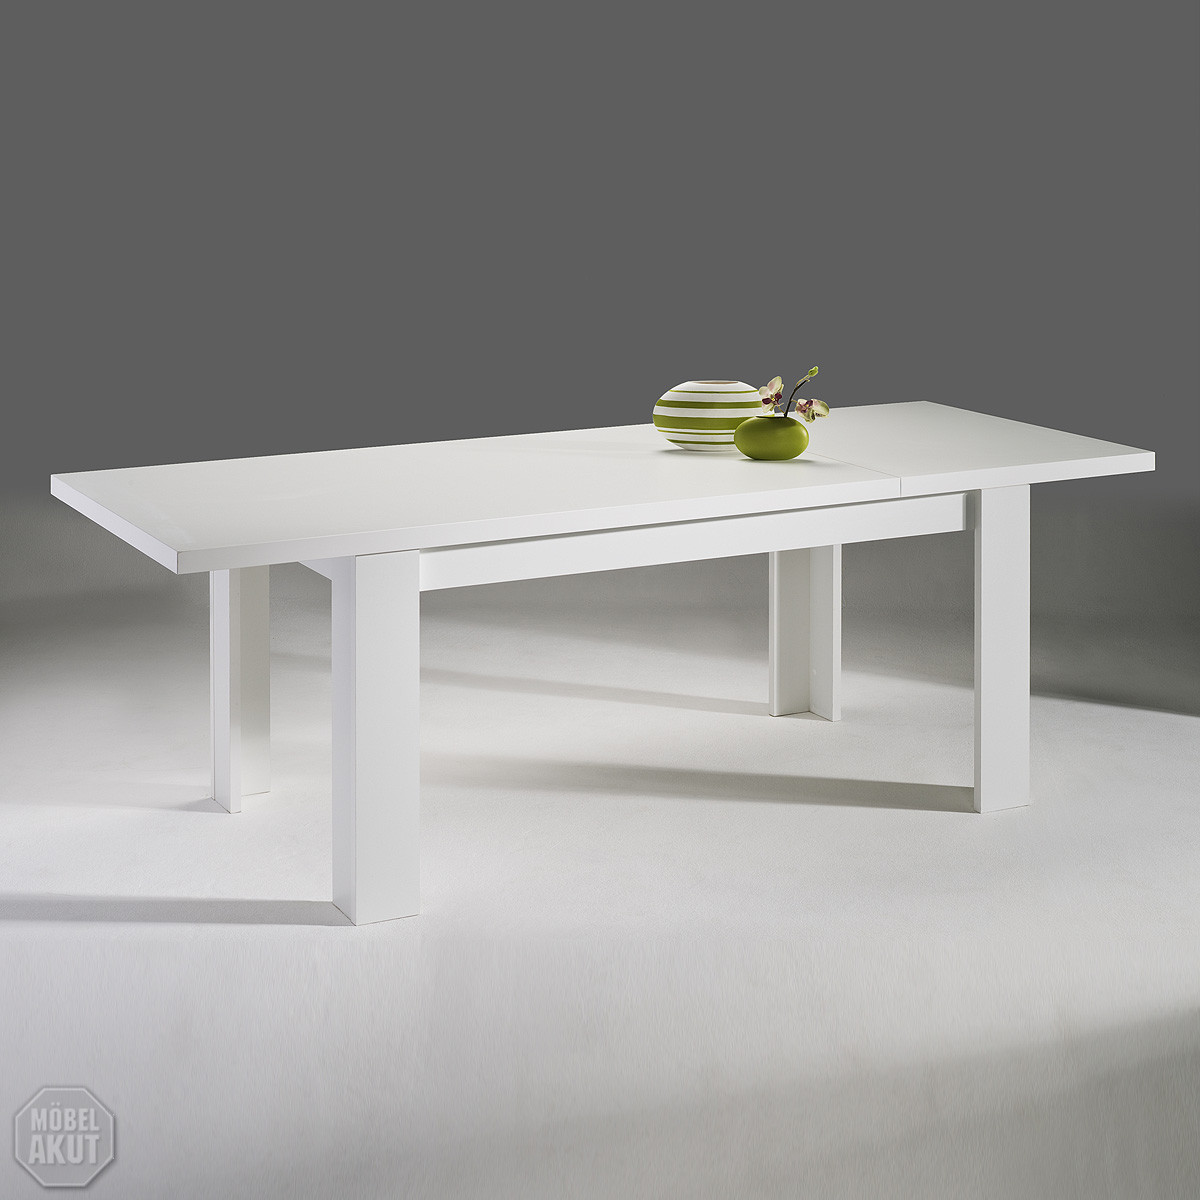 Ikea Tisch Weiß
 ikea tisch weiß ausziehbar – ForAfrica